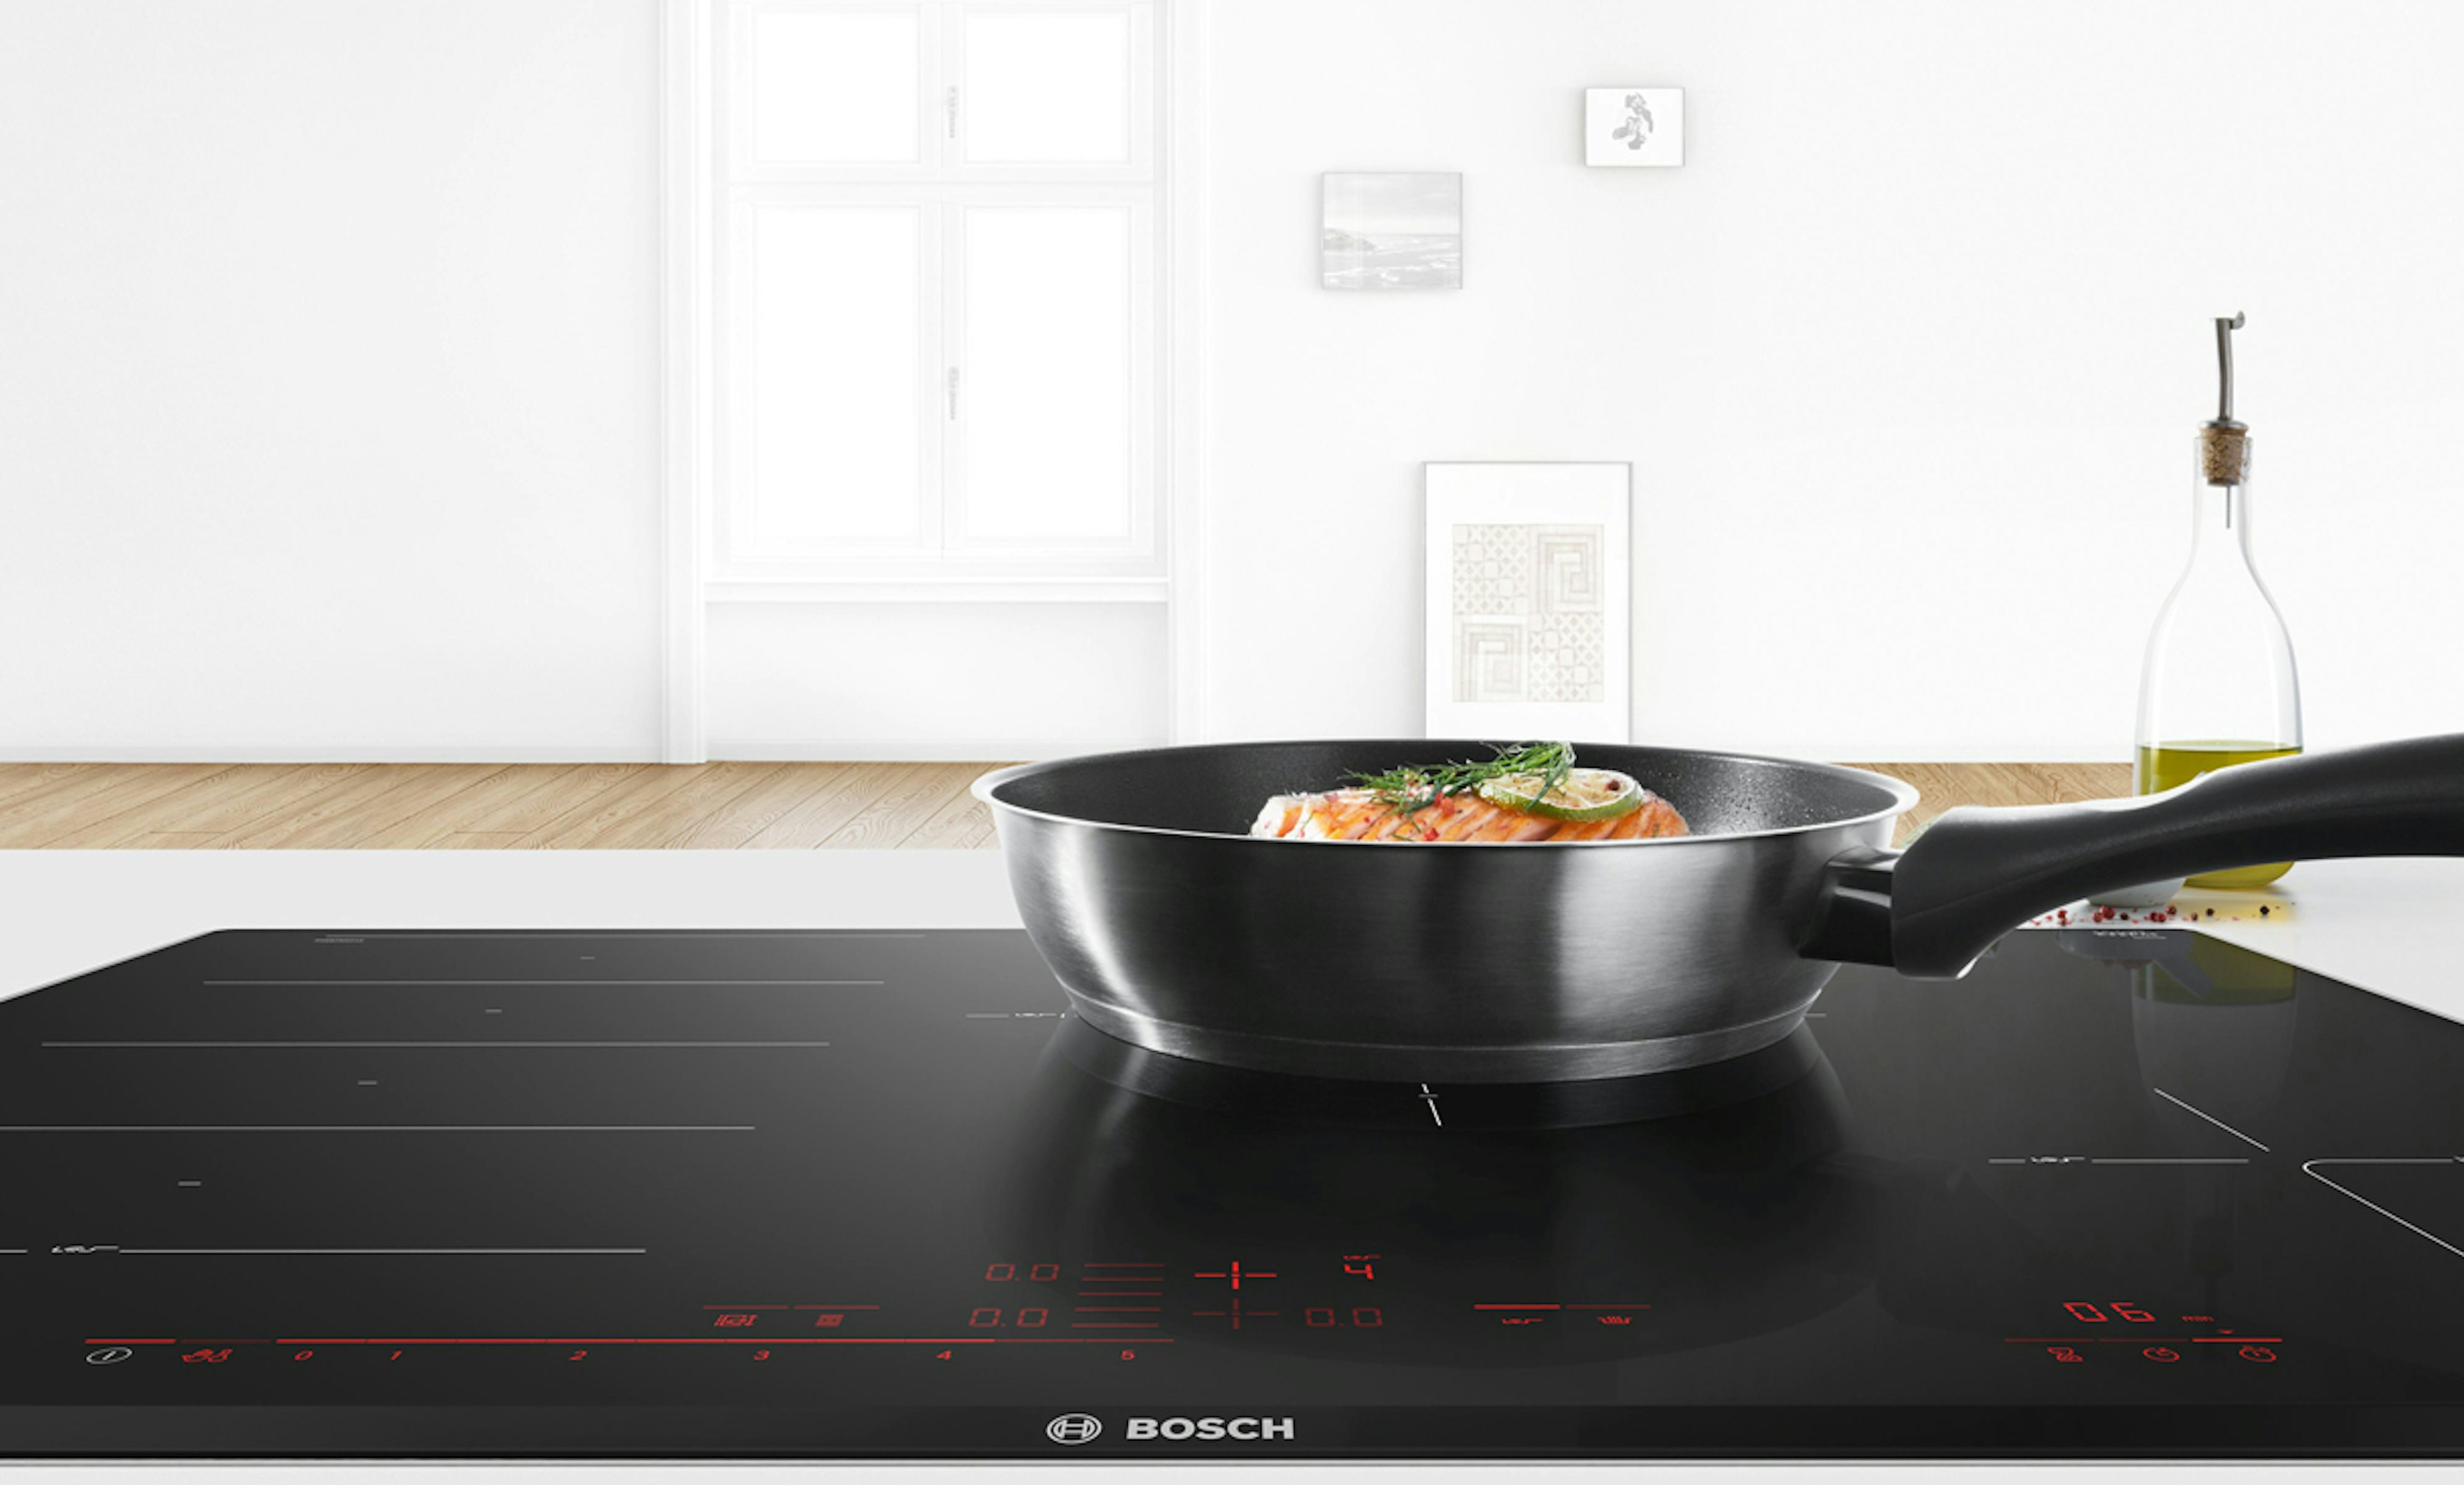 Bosch inductie kookplaat 90 cm breed.